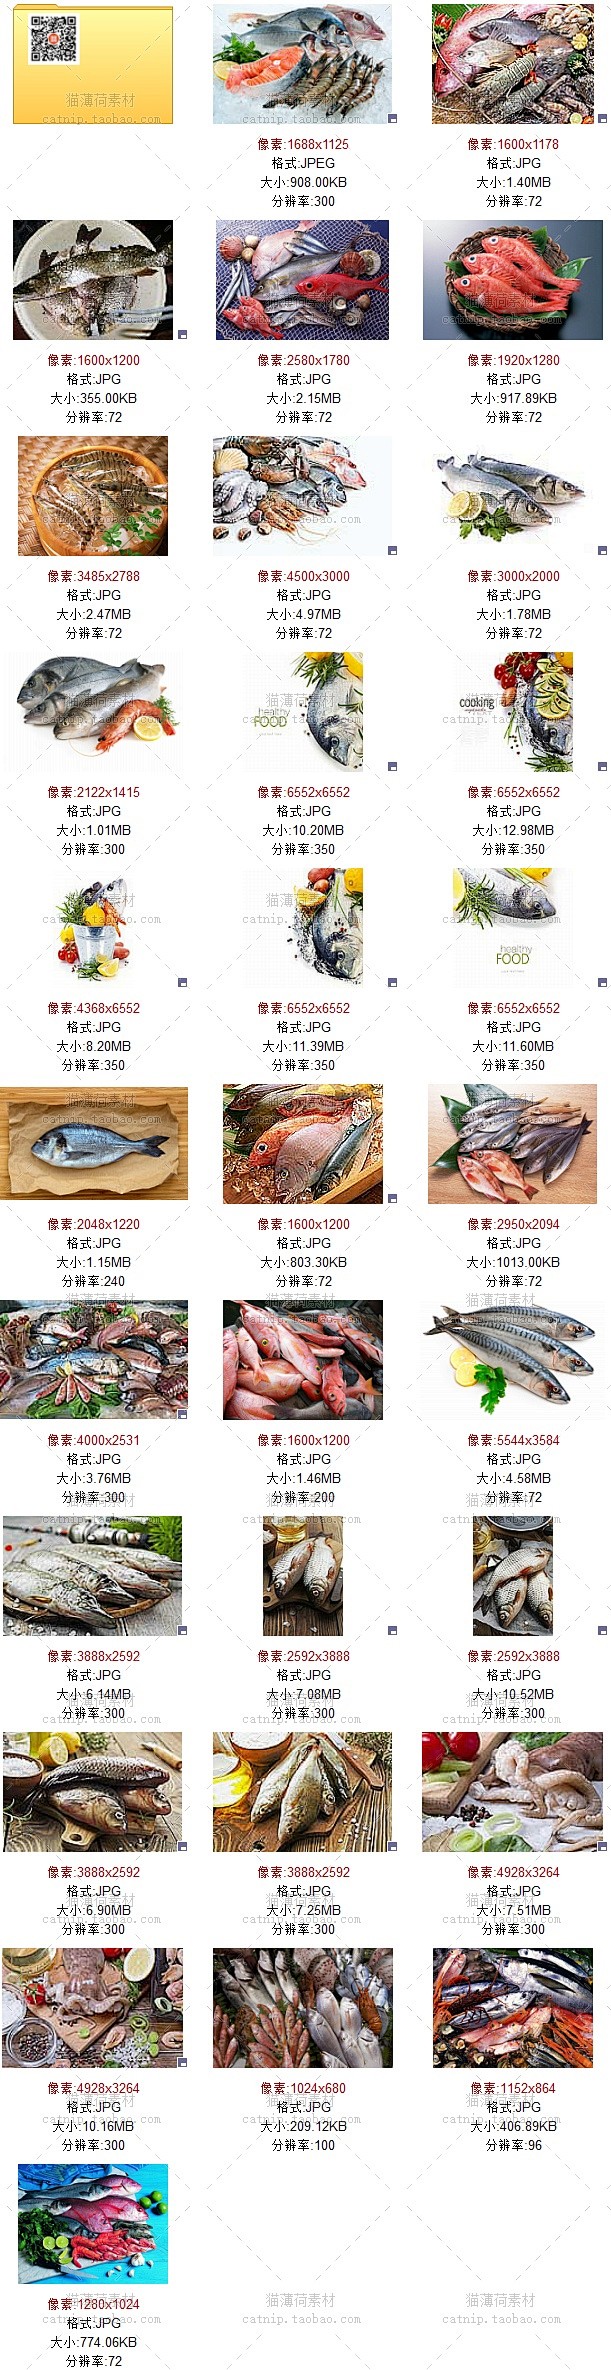 [gq65]30张新海鲜鱼虾鱿鱼食材摄影...